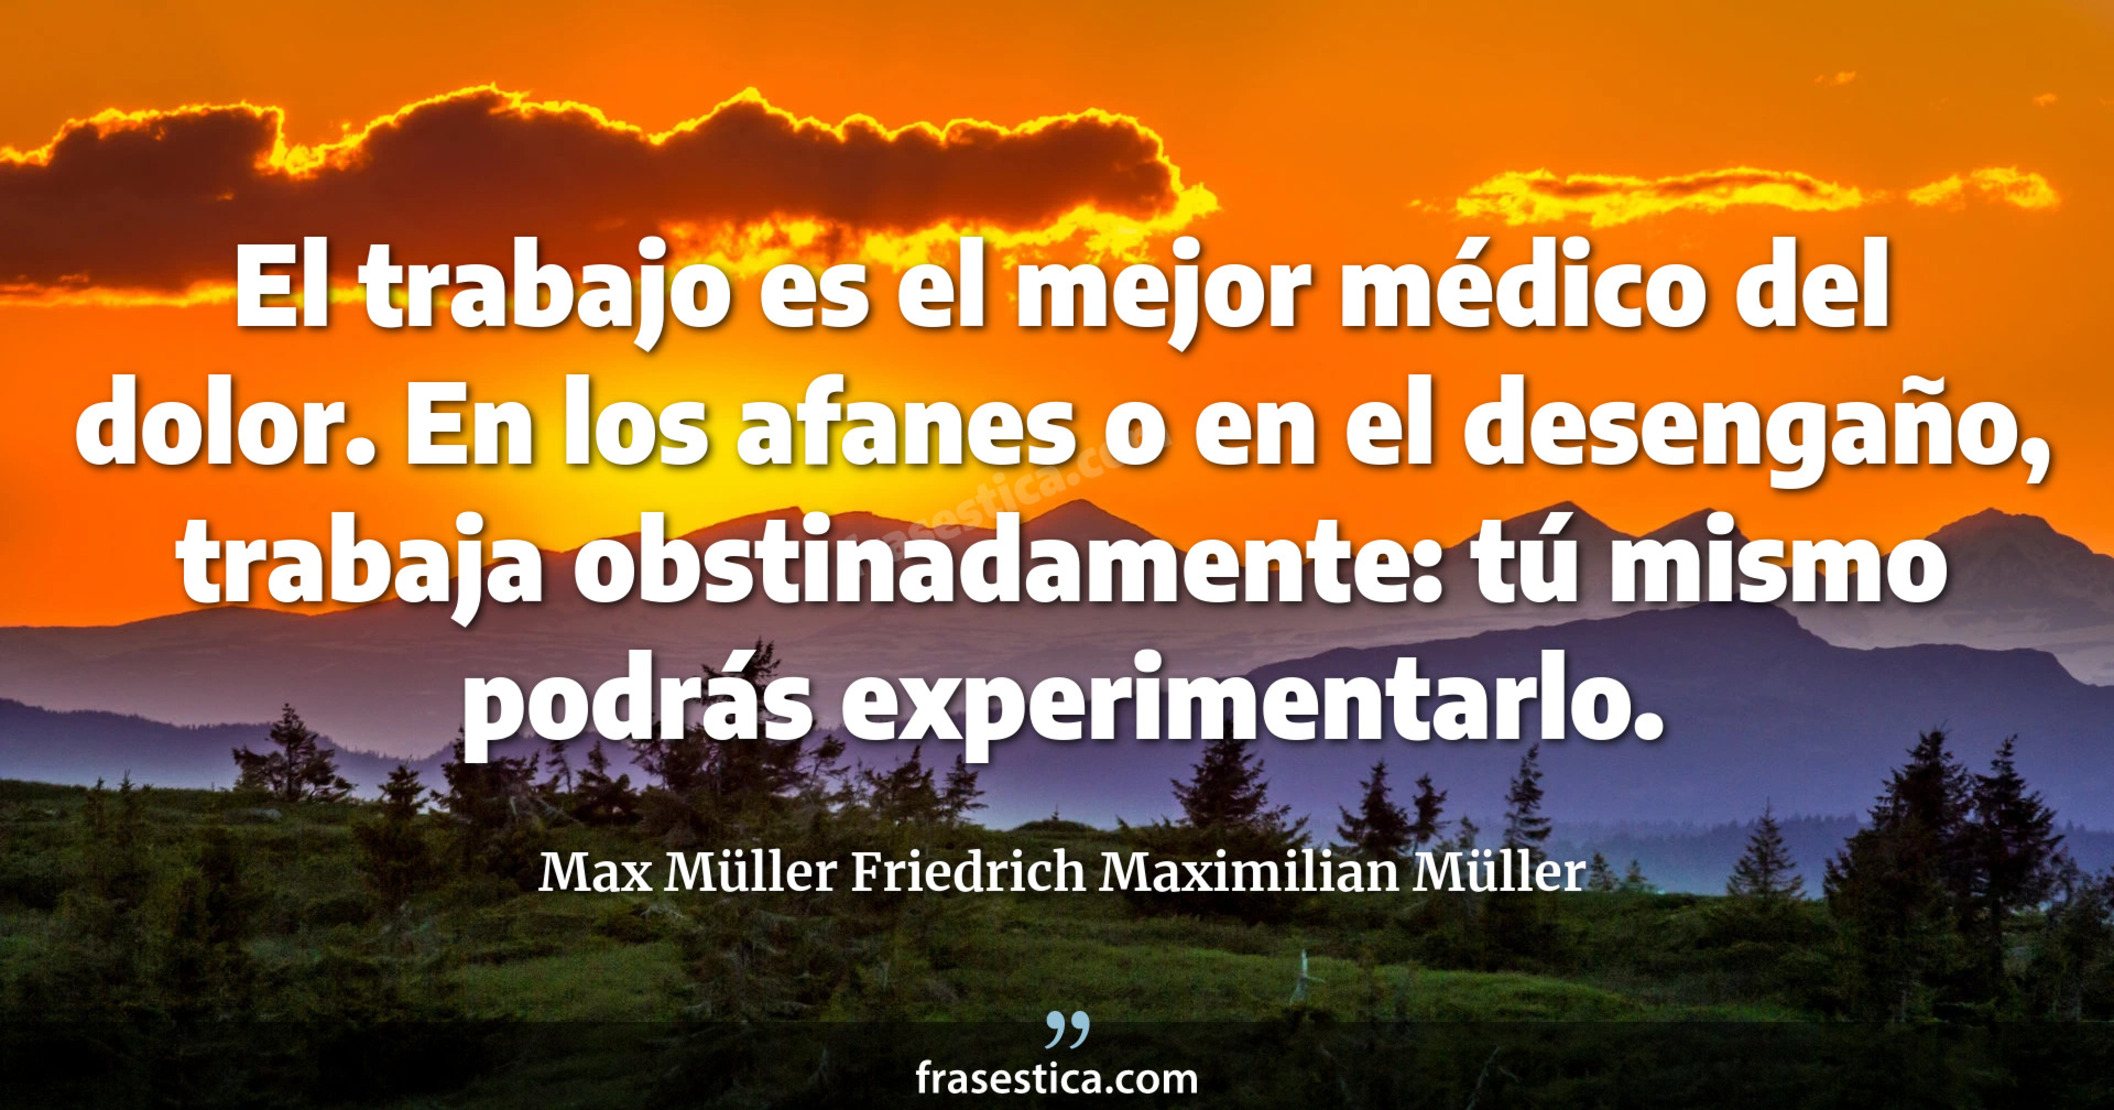 El trabajo es el mejor médico del dolor. En los afanes o en el desengaño, trabaja obstinadamente: tú mismo podrás experimentarlo. - Max Müller Friedrich Maximilian Müller